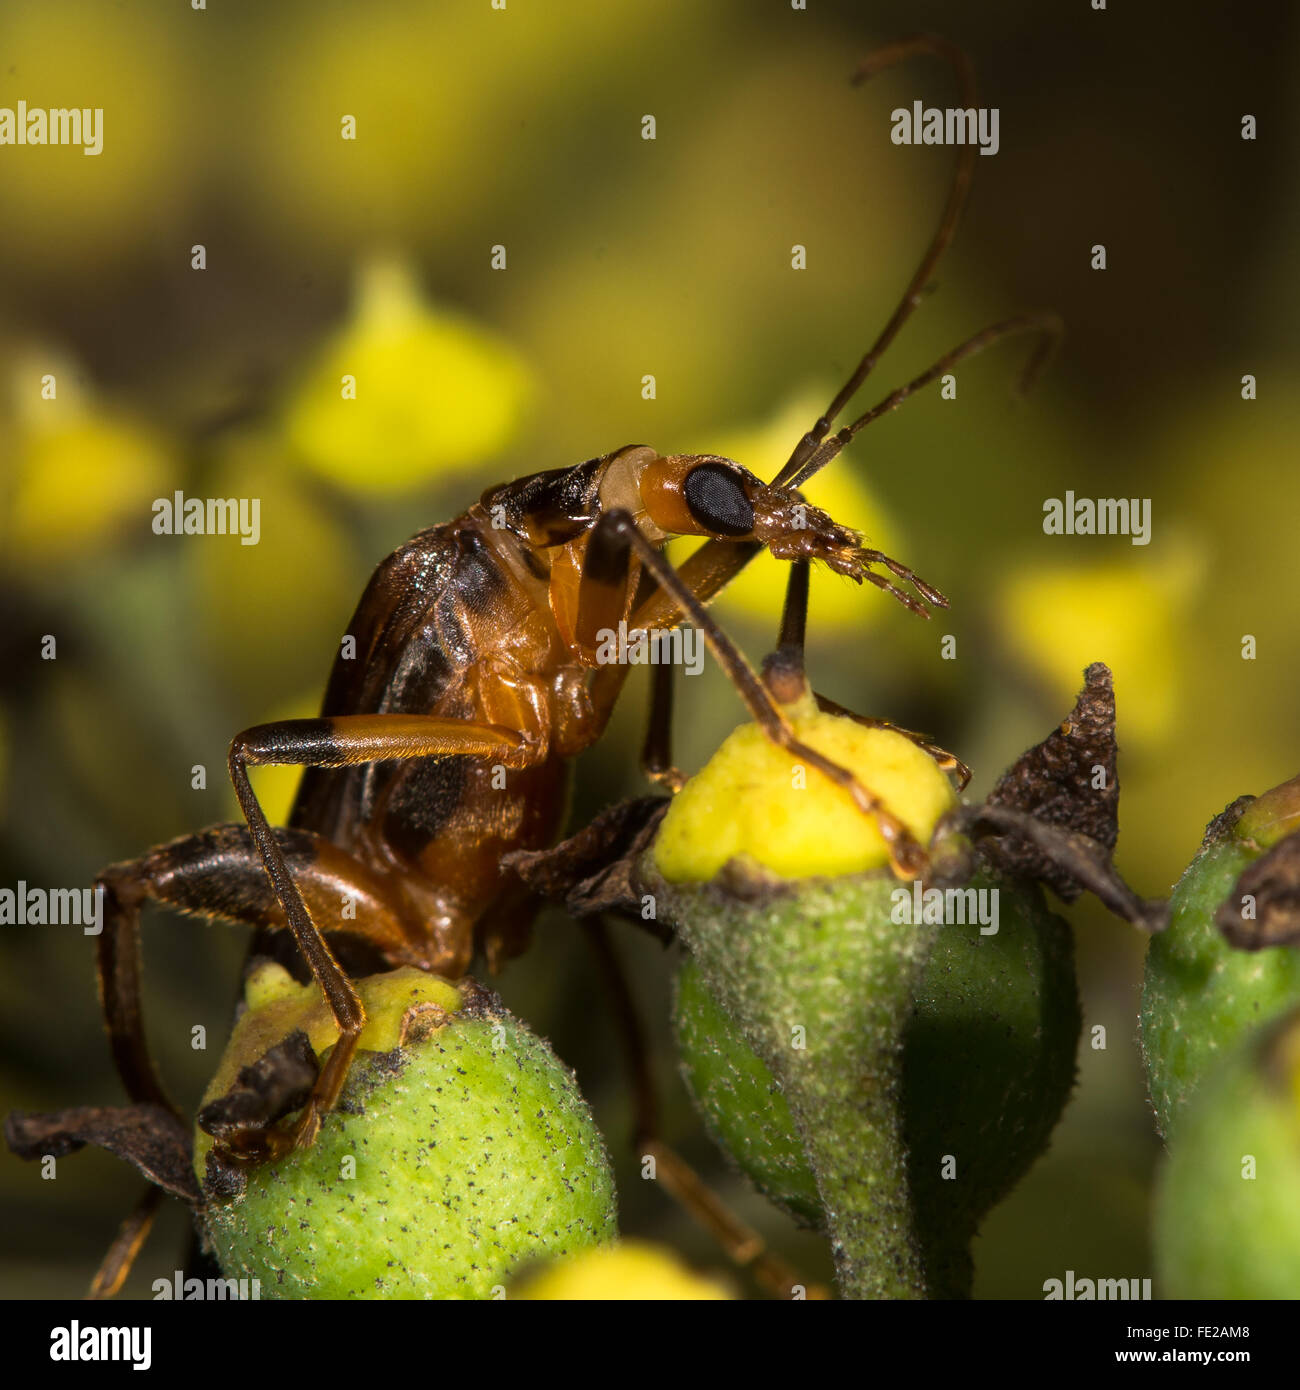 Oedemera femoralis escarabajo sobre ivy flores de cerca. Escarabajo de la familia Oedemeridae comer polen de ivy Foto de stock